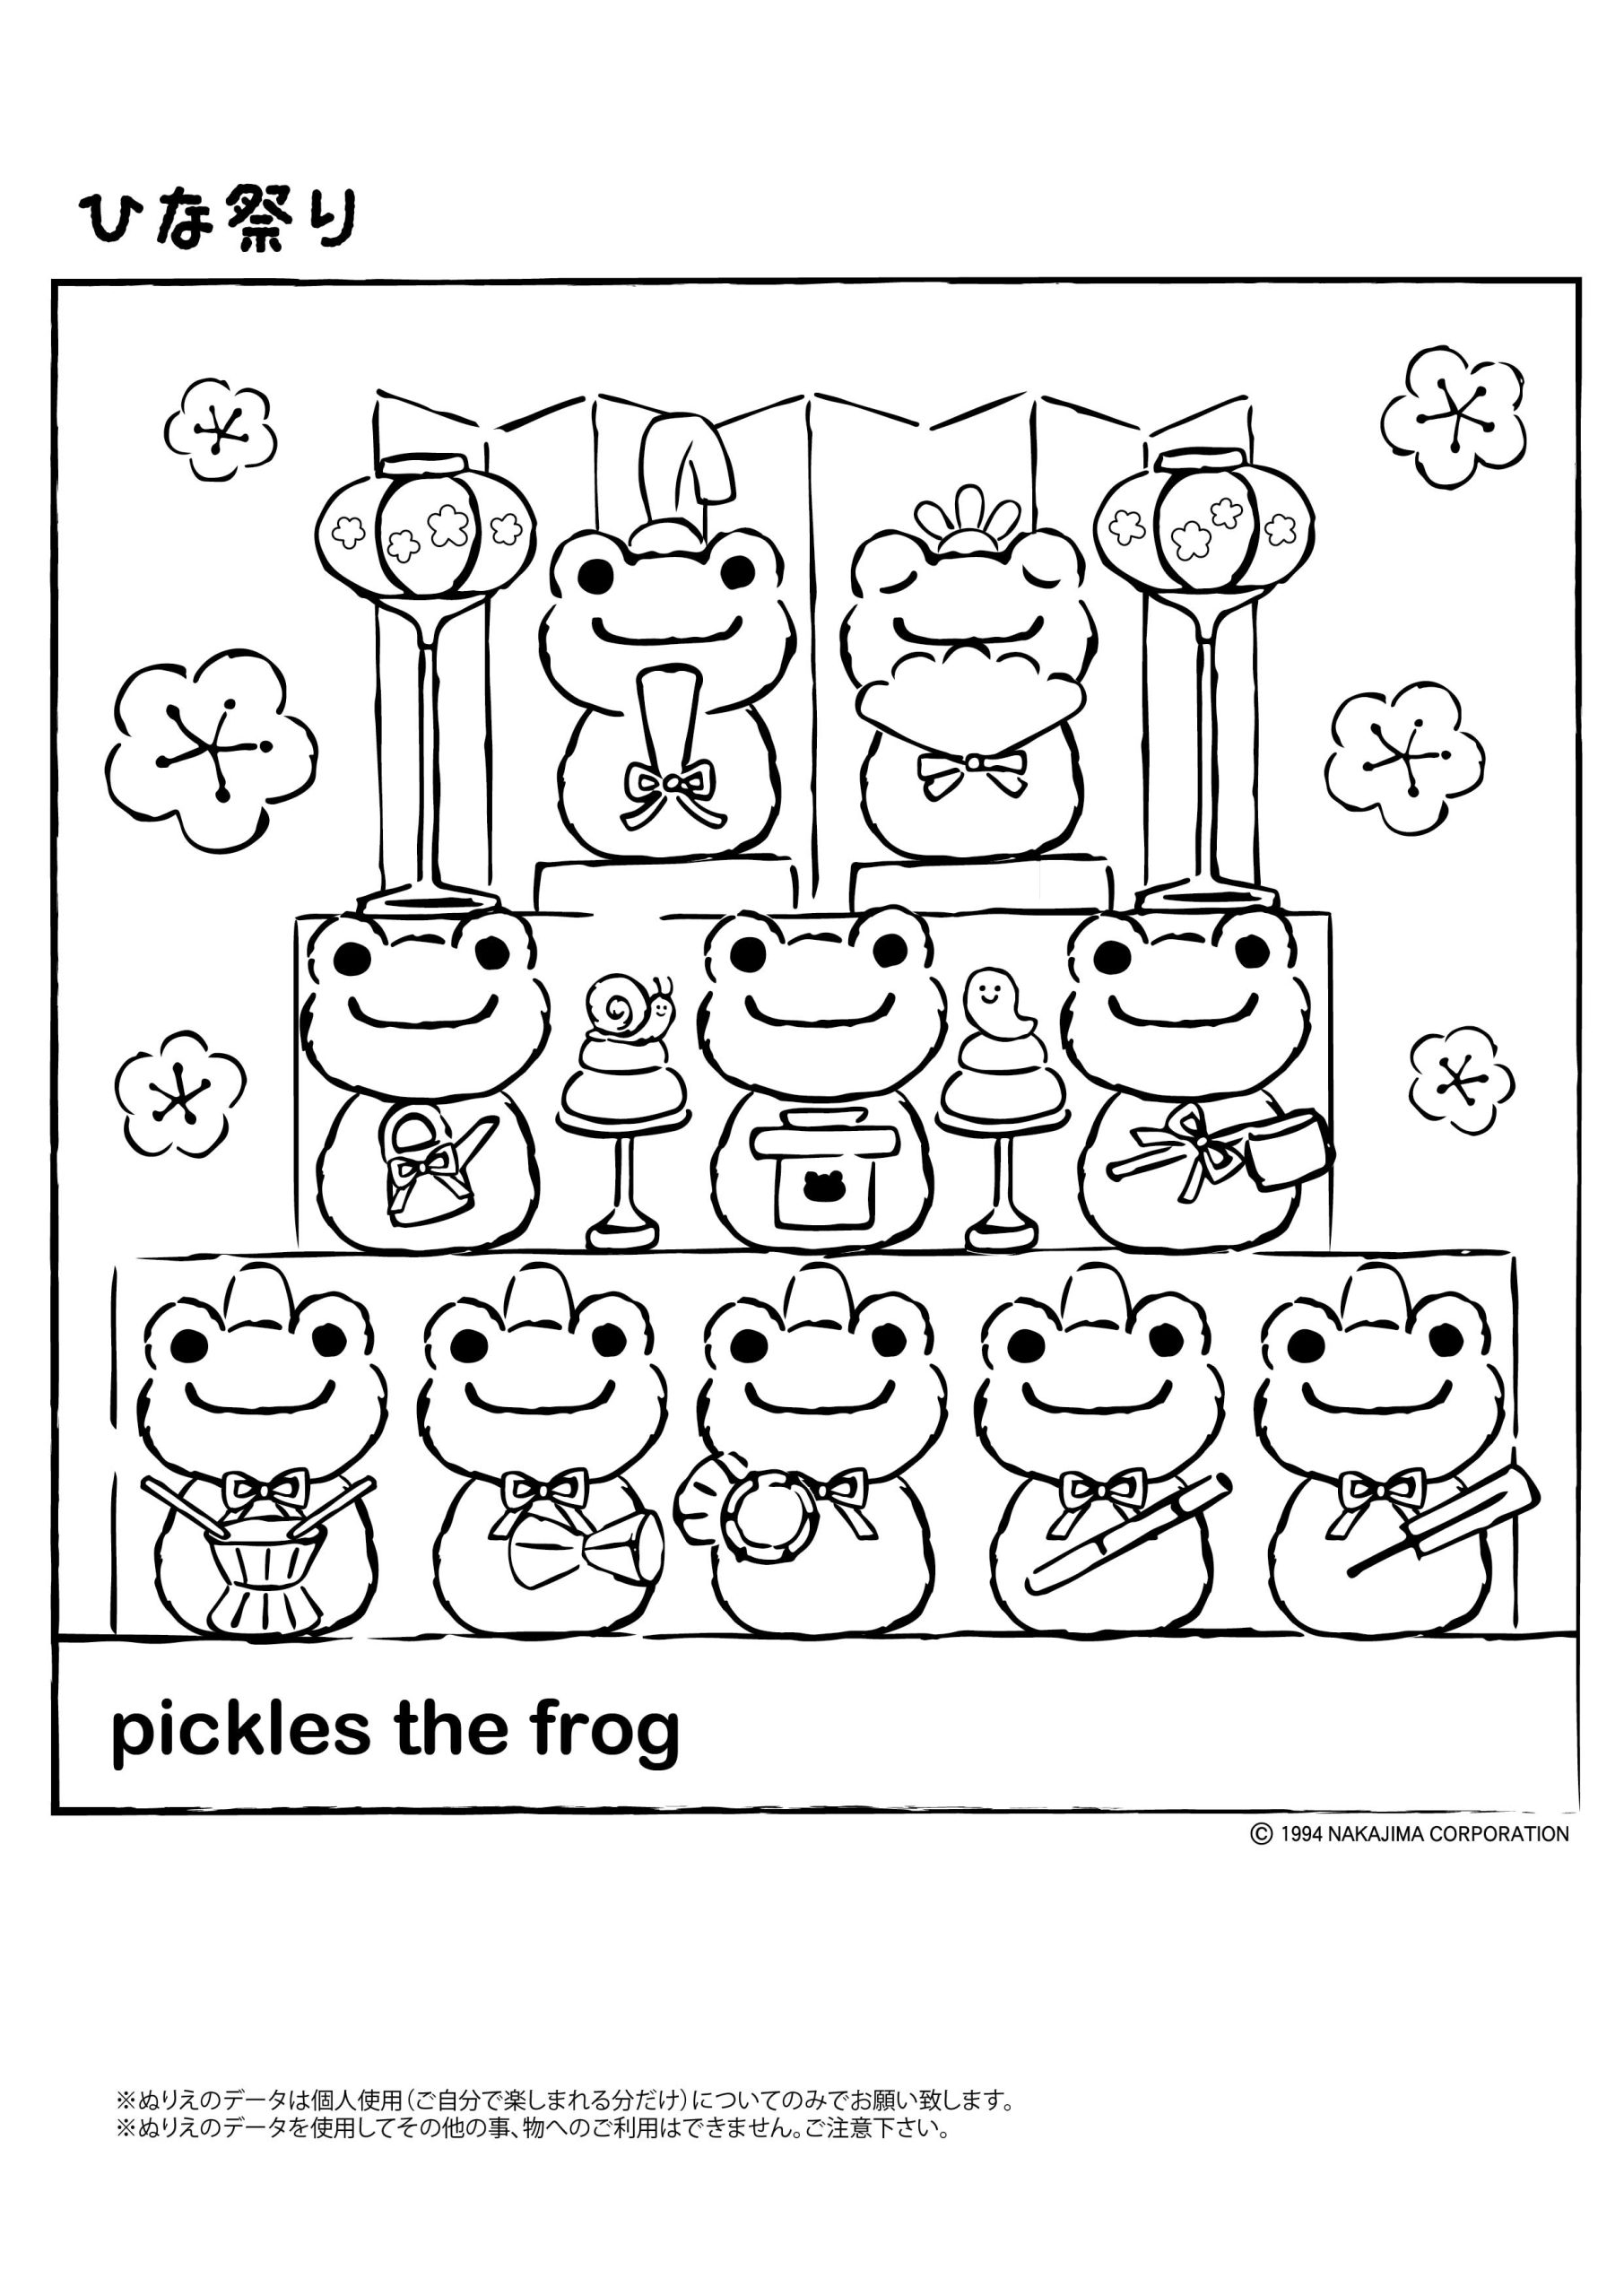 ぬりえ」NEWができました♪】#かえるのピクルス #picklesthefrog ...